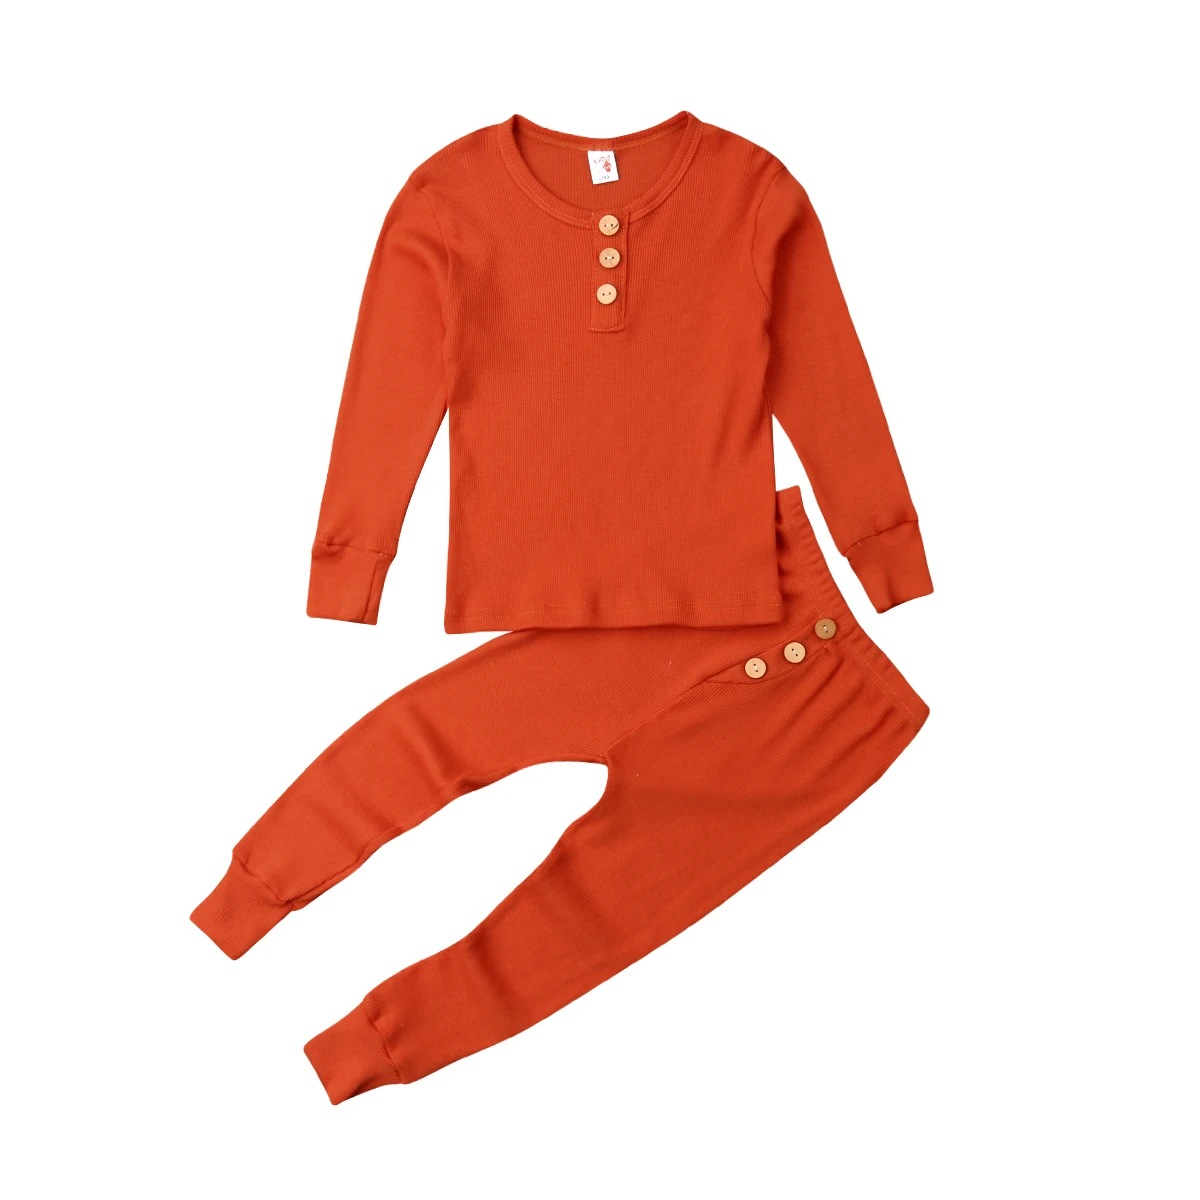 Осень детская зимняя комплект из 2 предметов пижамный для детей маленьких - Фото №1